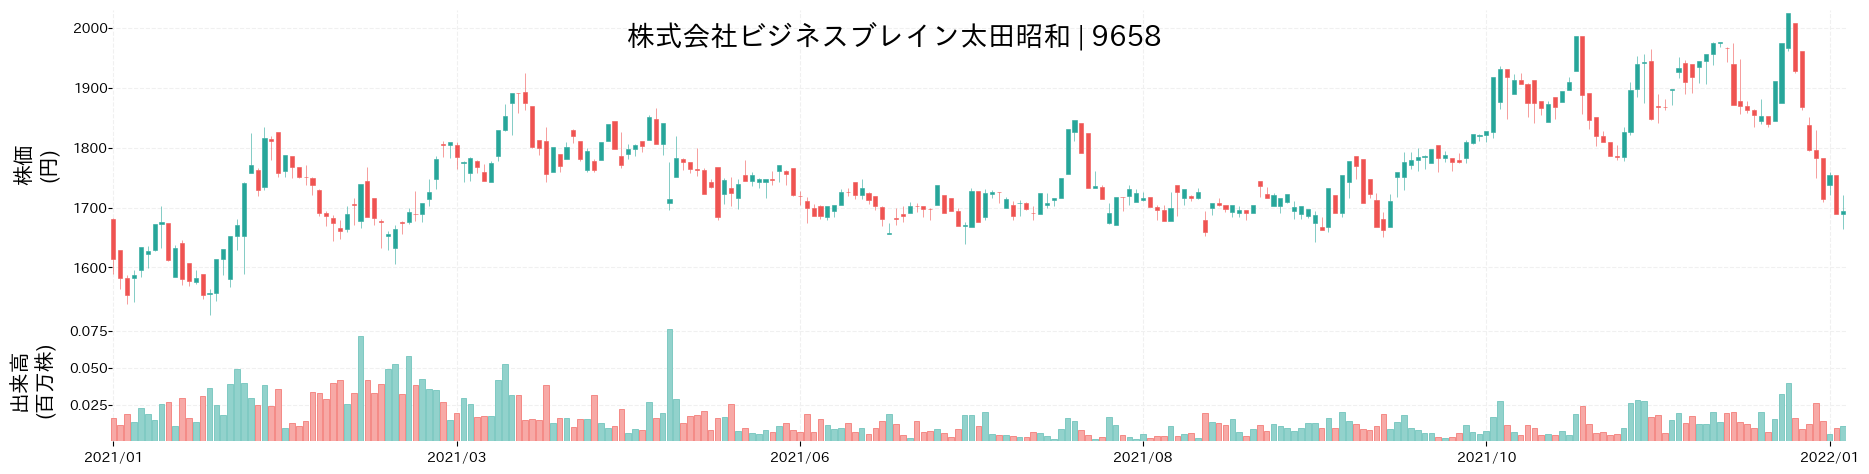 ビジネスブレイン太田昭和の株価推移(2021)